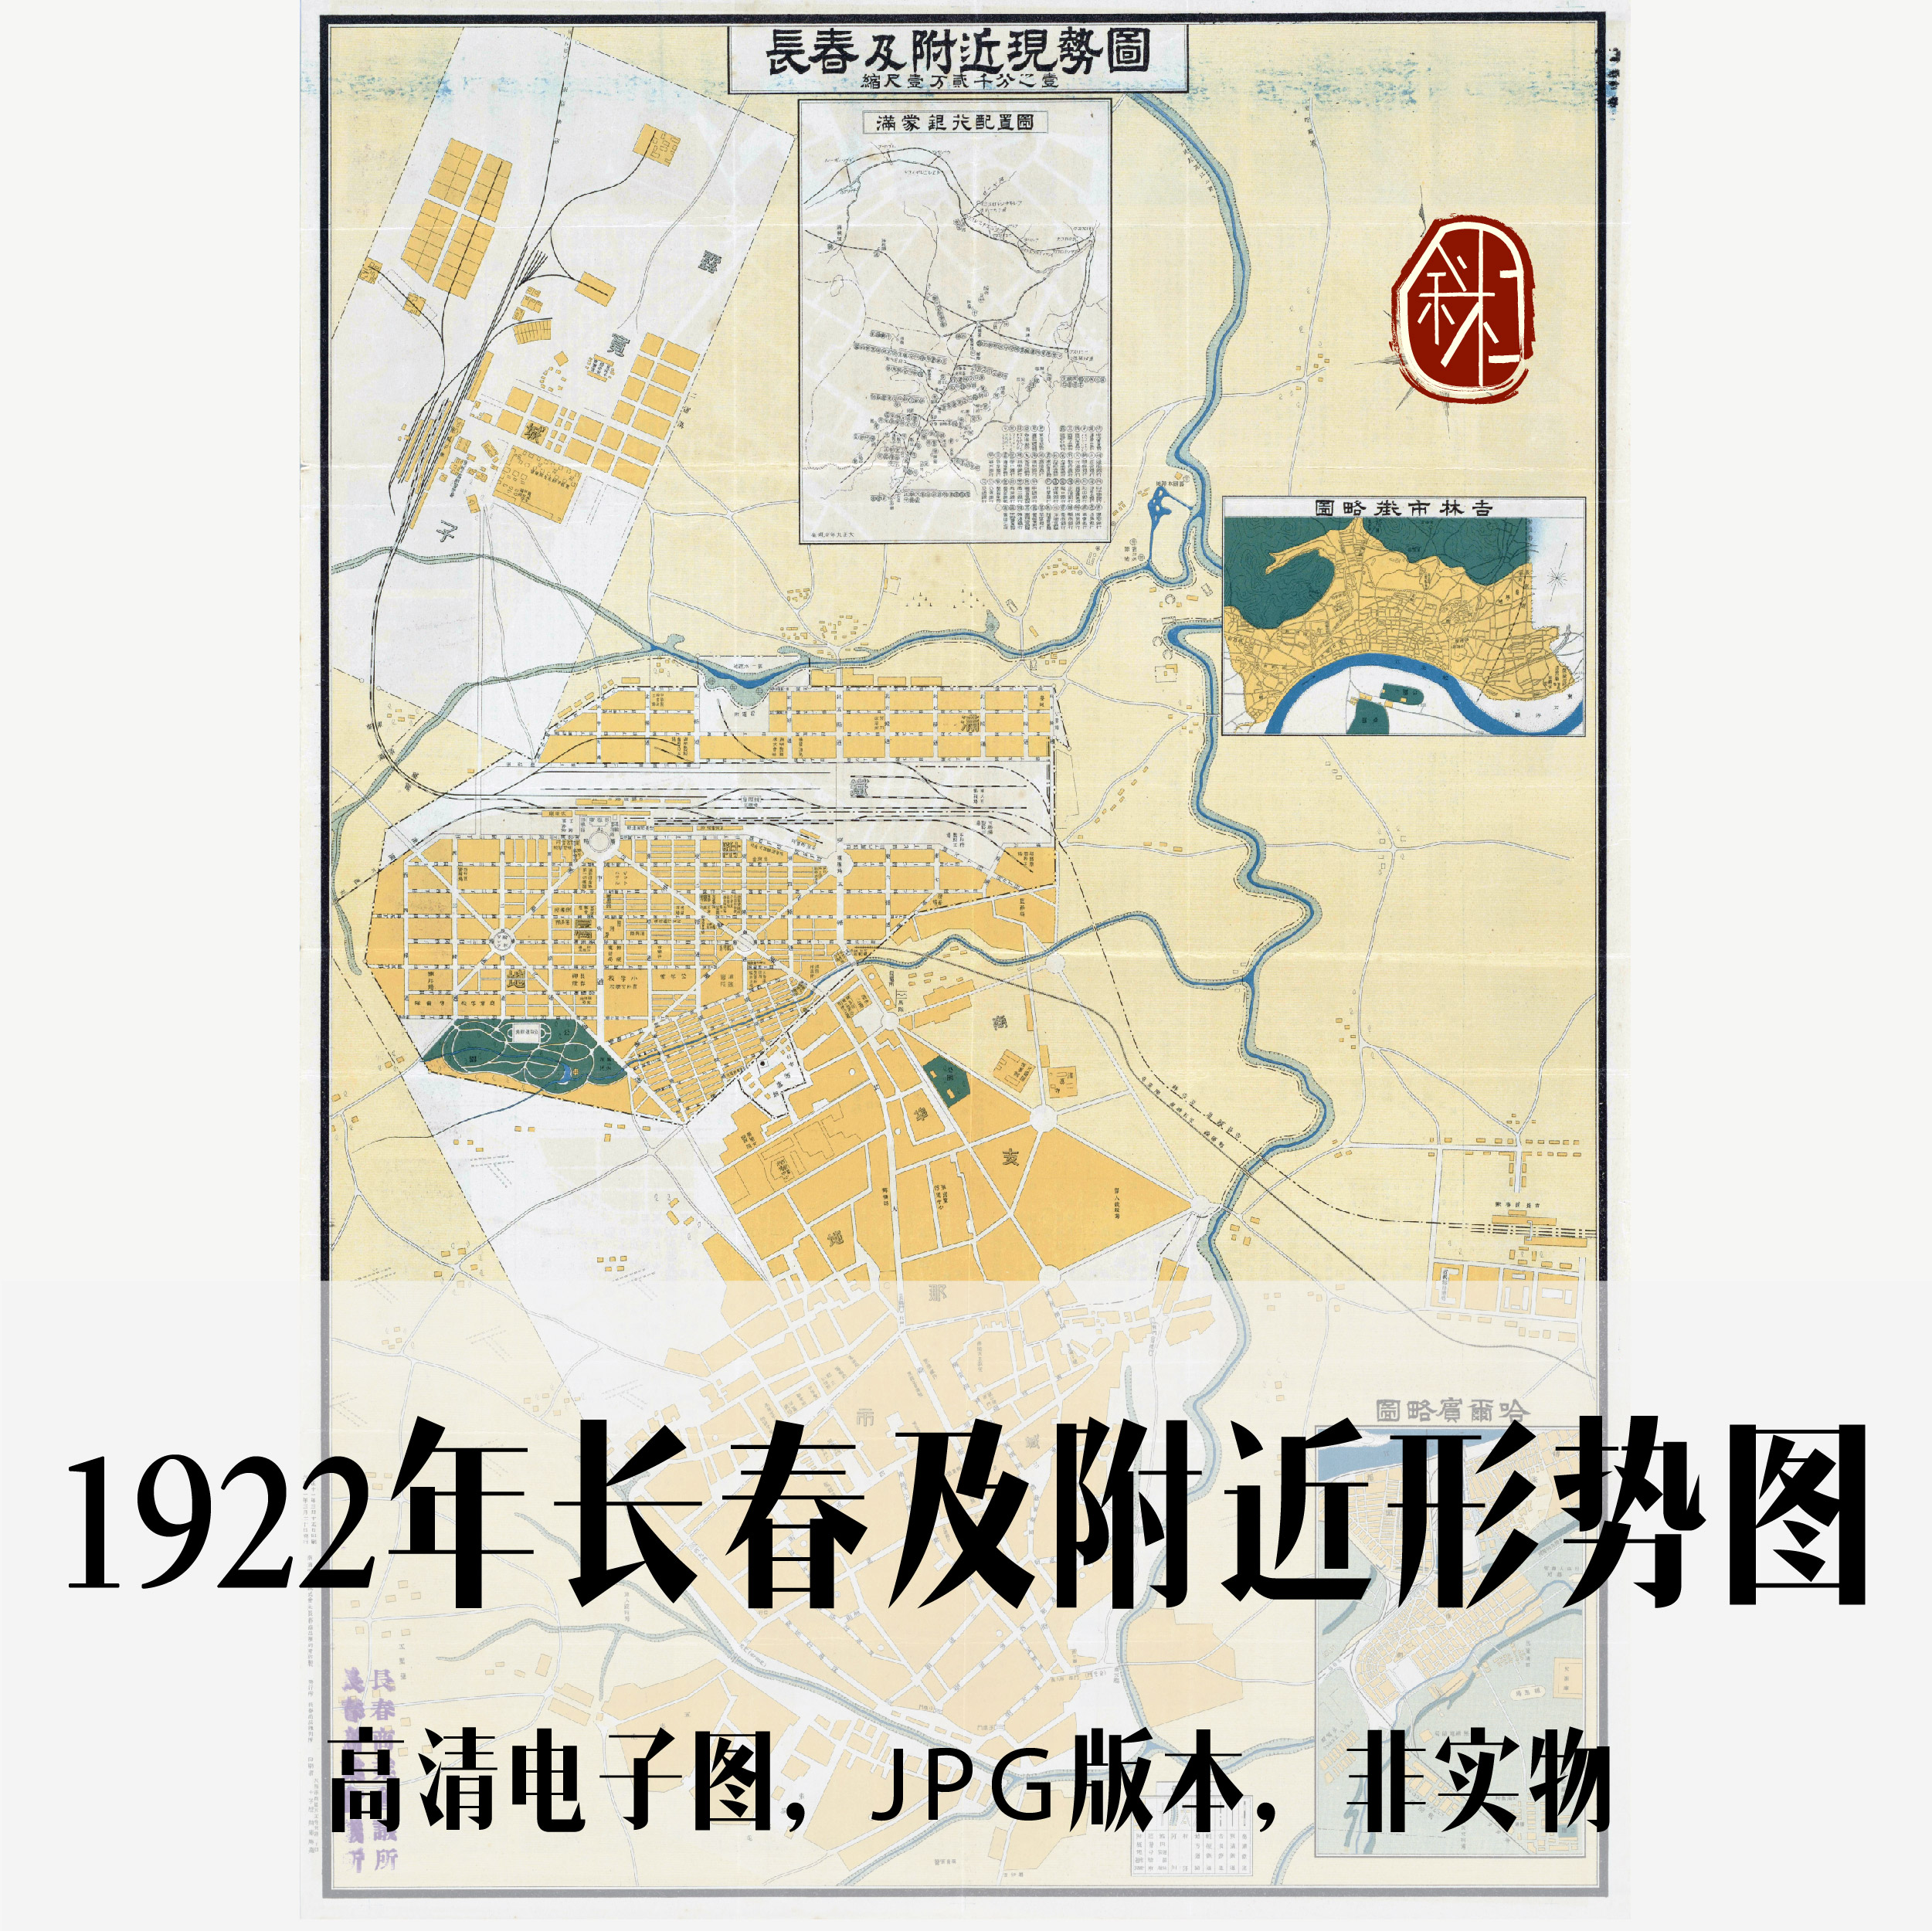 1922年长春及附近形势图电子老地图道具历史地理资料素材